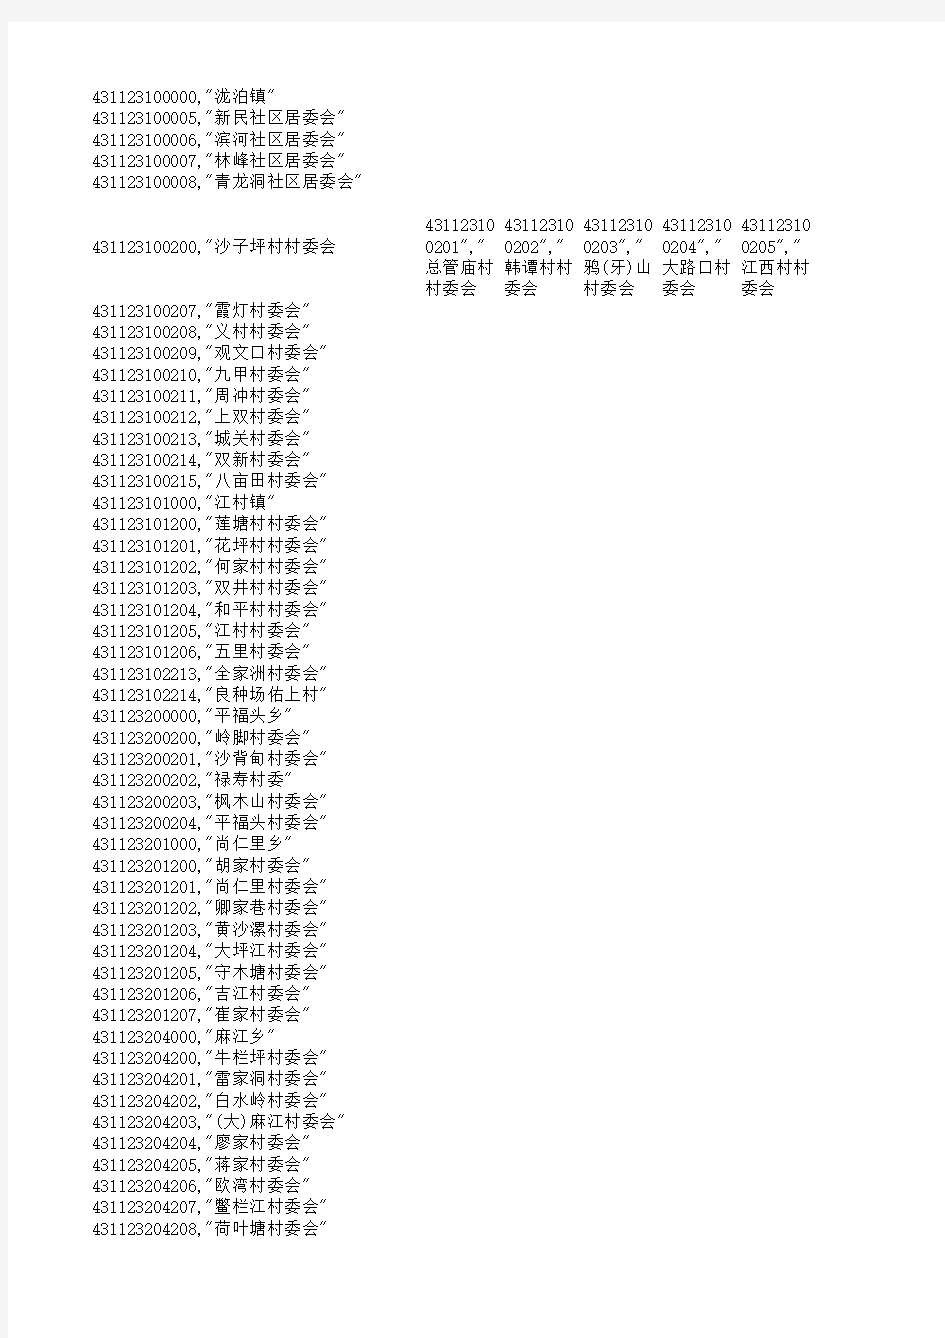 永州市茶林乡行政区划代码表